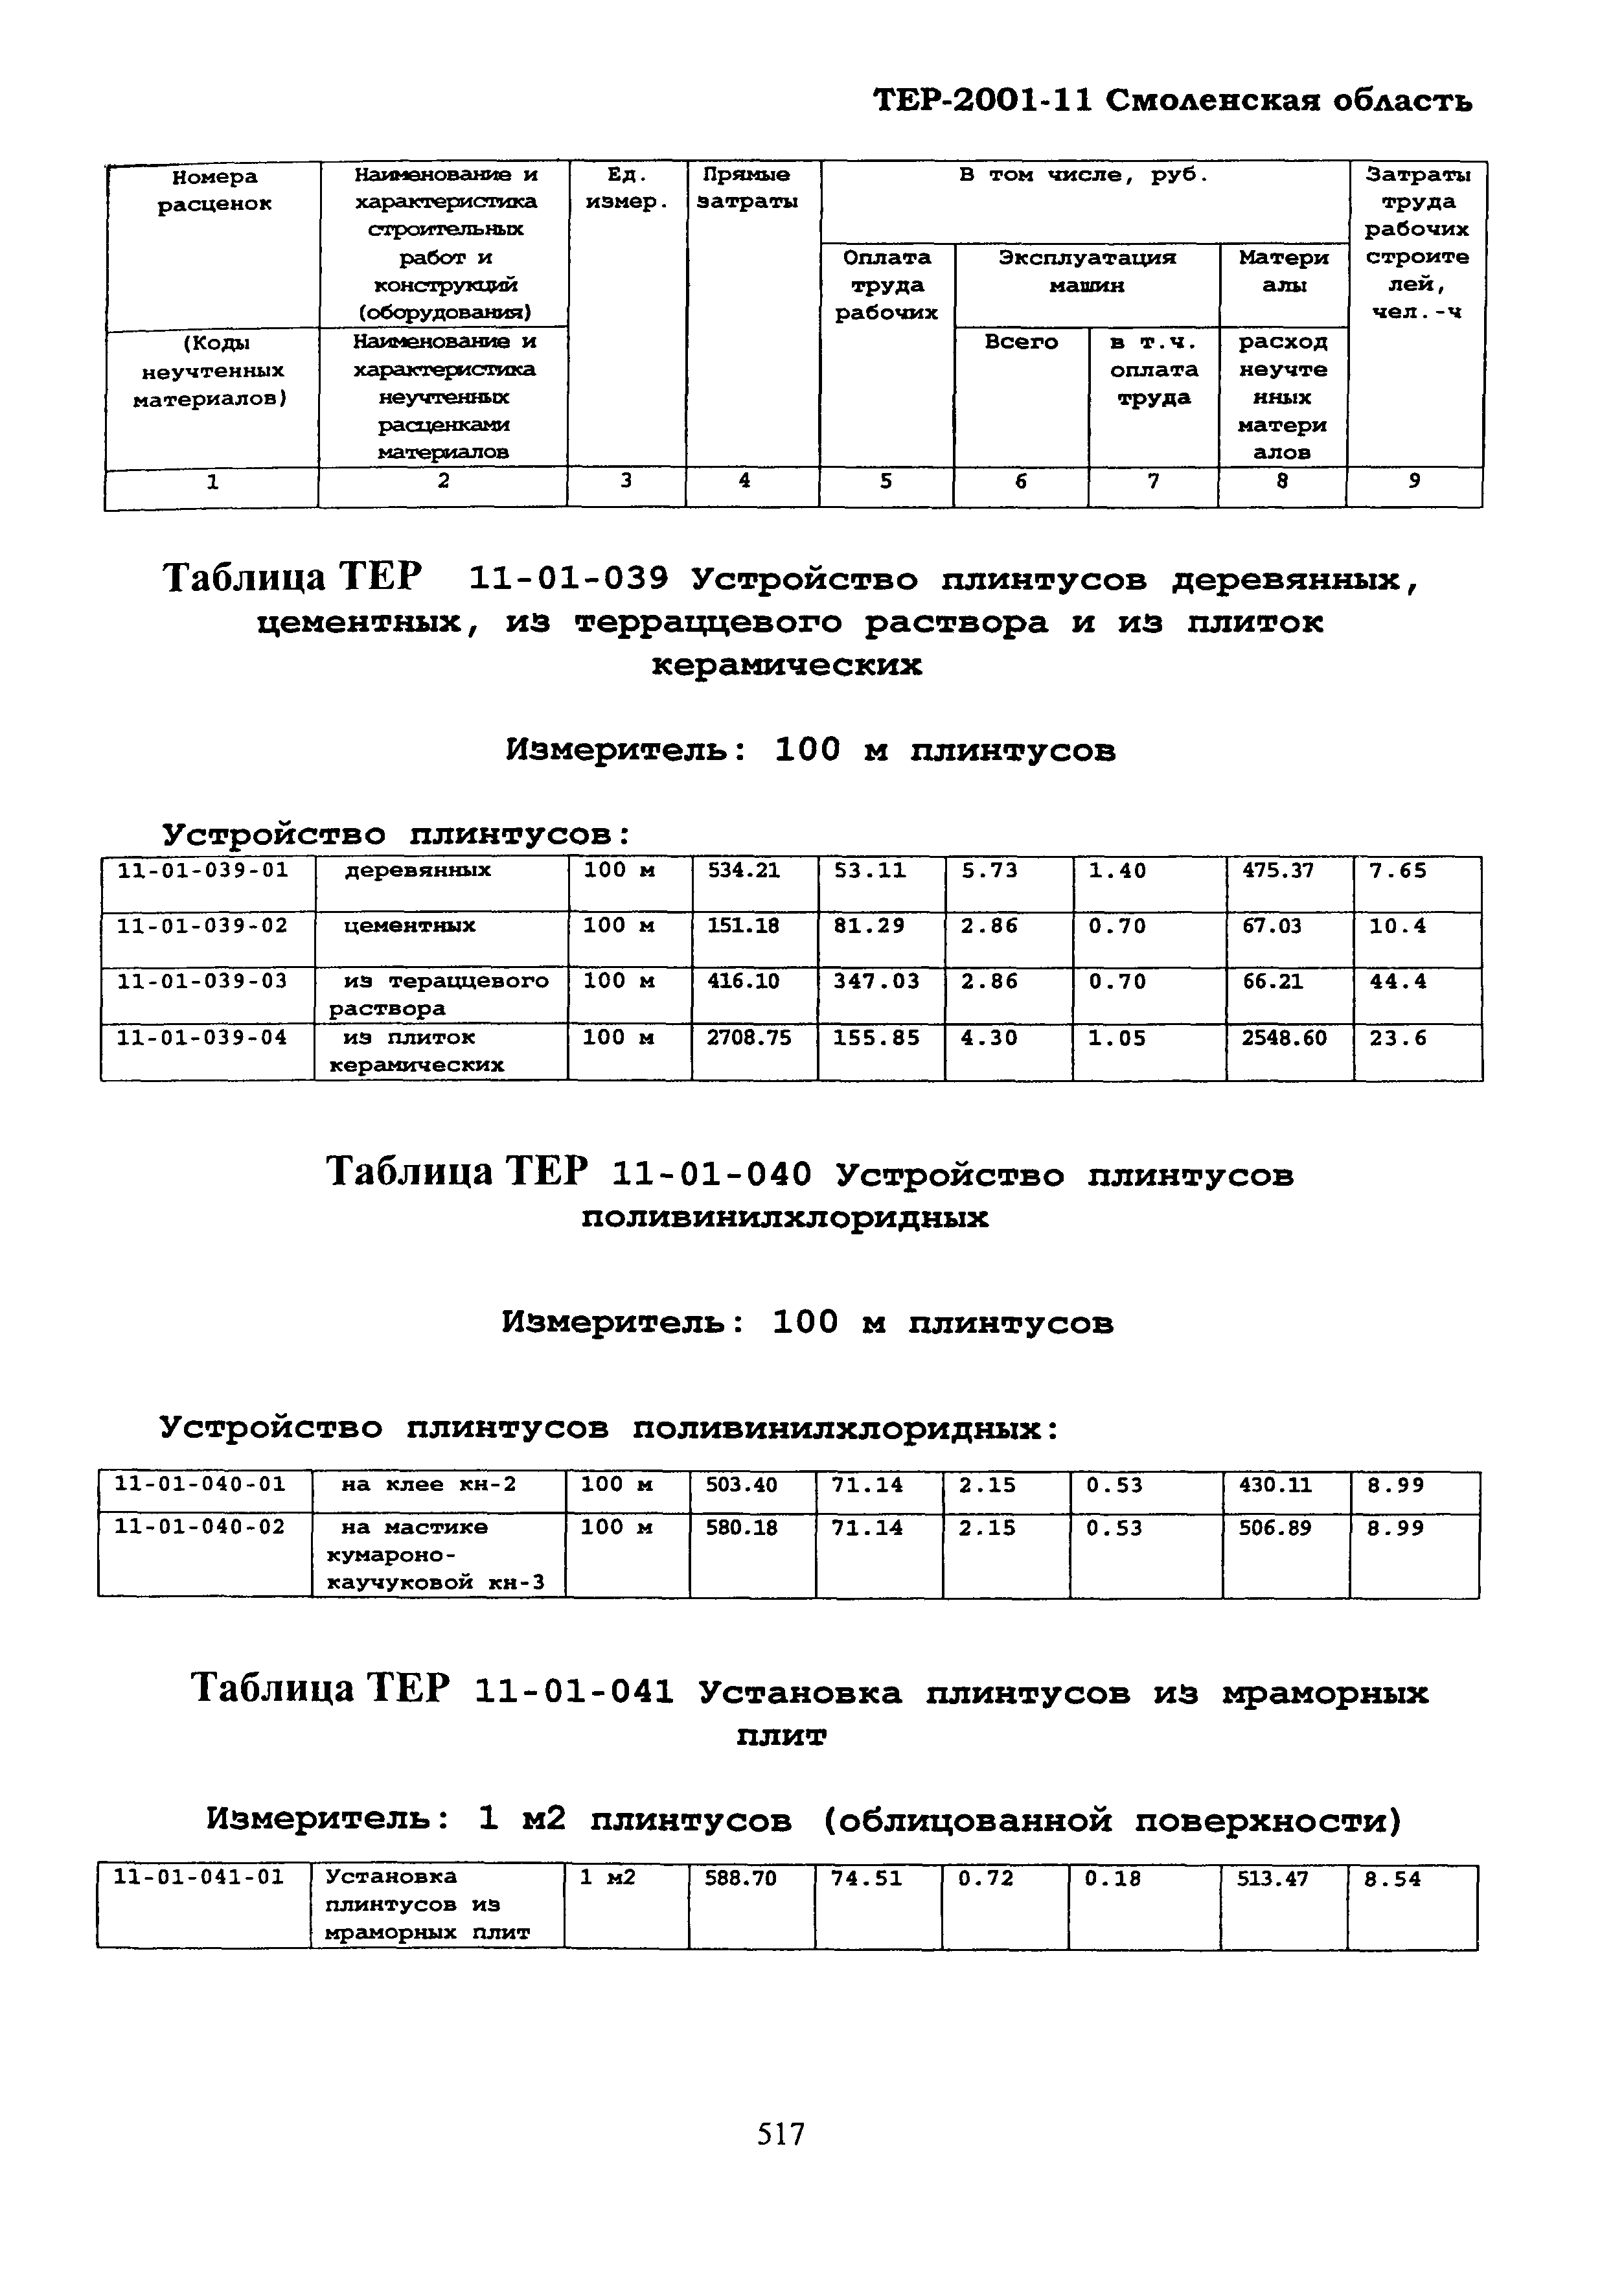 ТЕР Смоленской обл. 2001-11